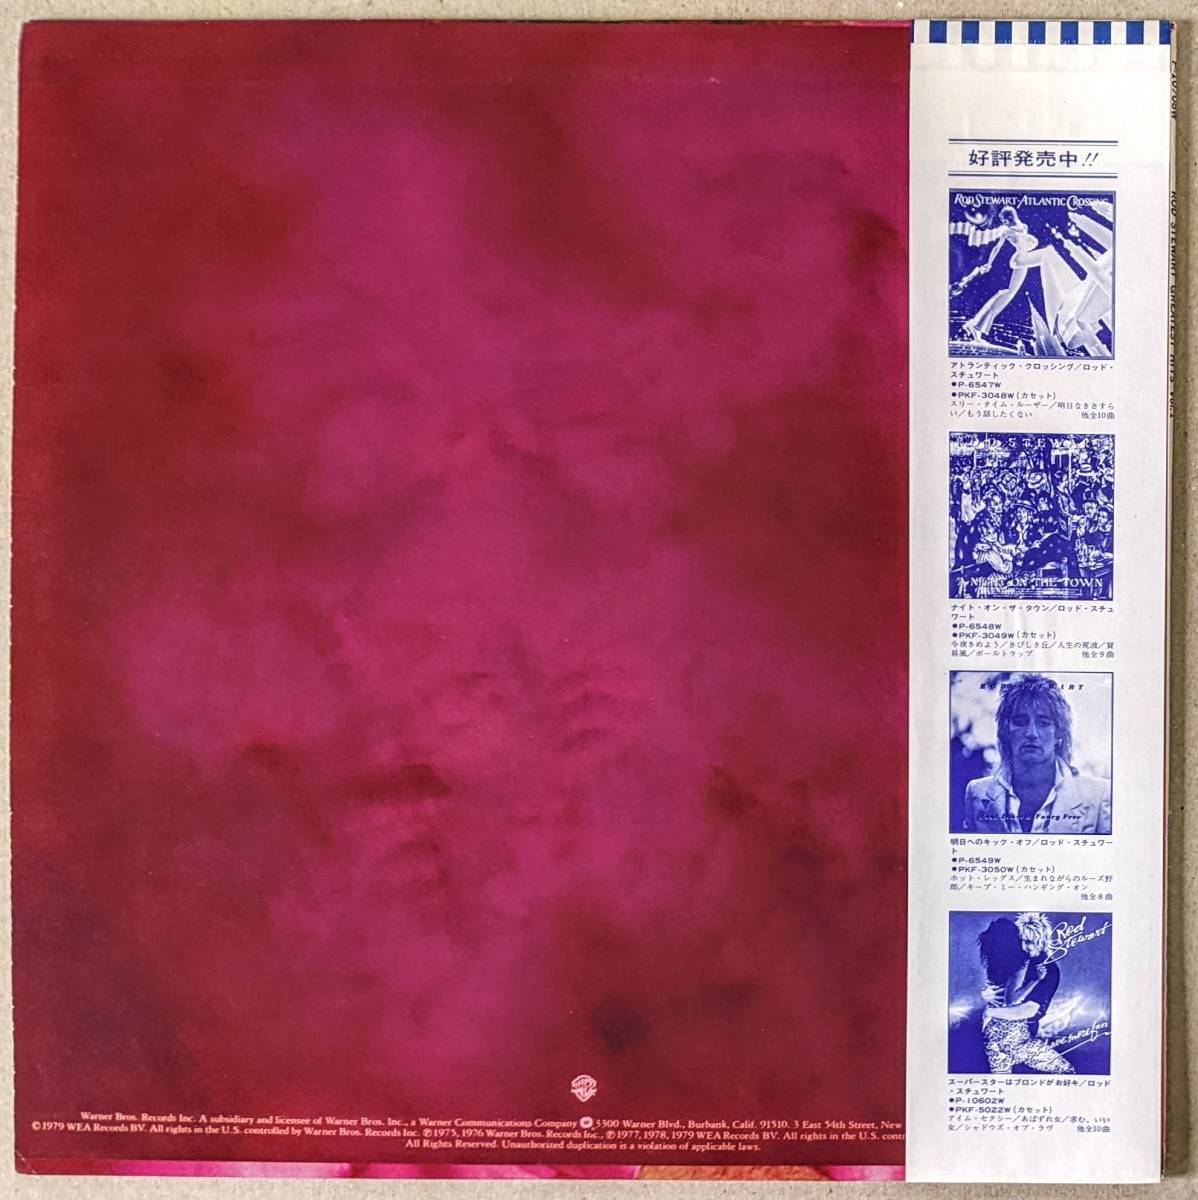 Rod Stewart ロッド・スチュワート - Greatest Hits 日本オリジナル・アナログ・レコード